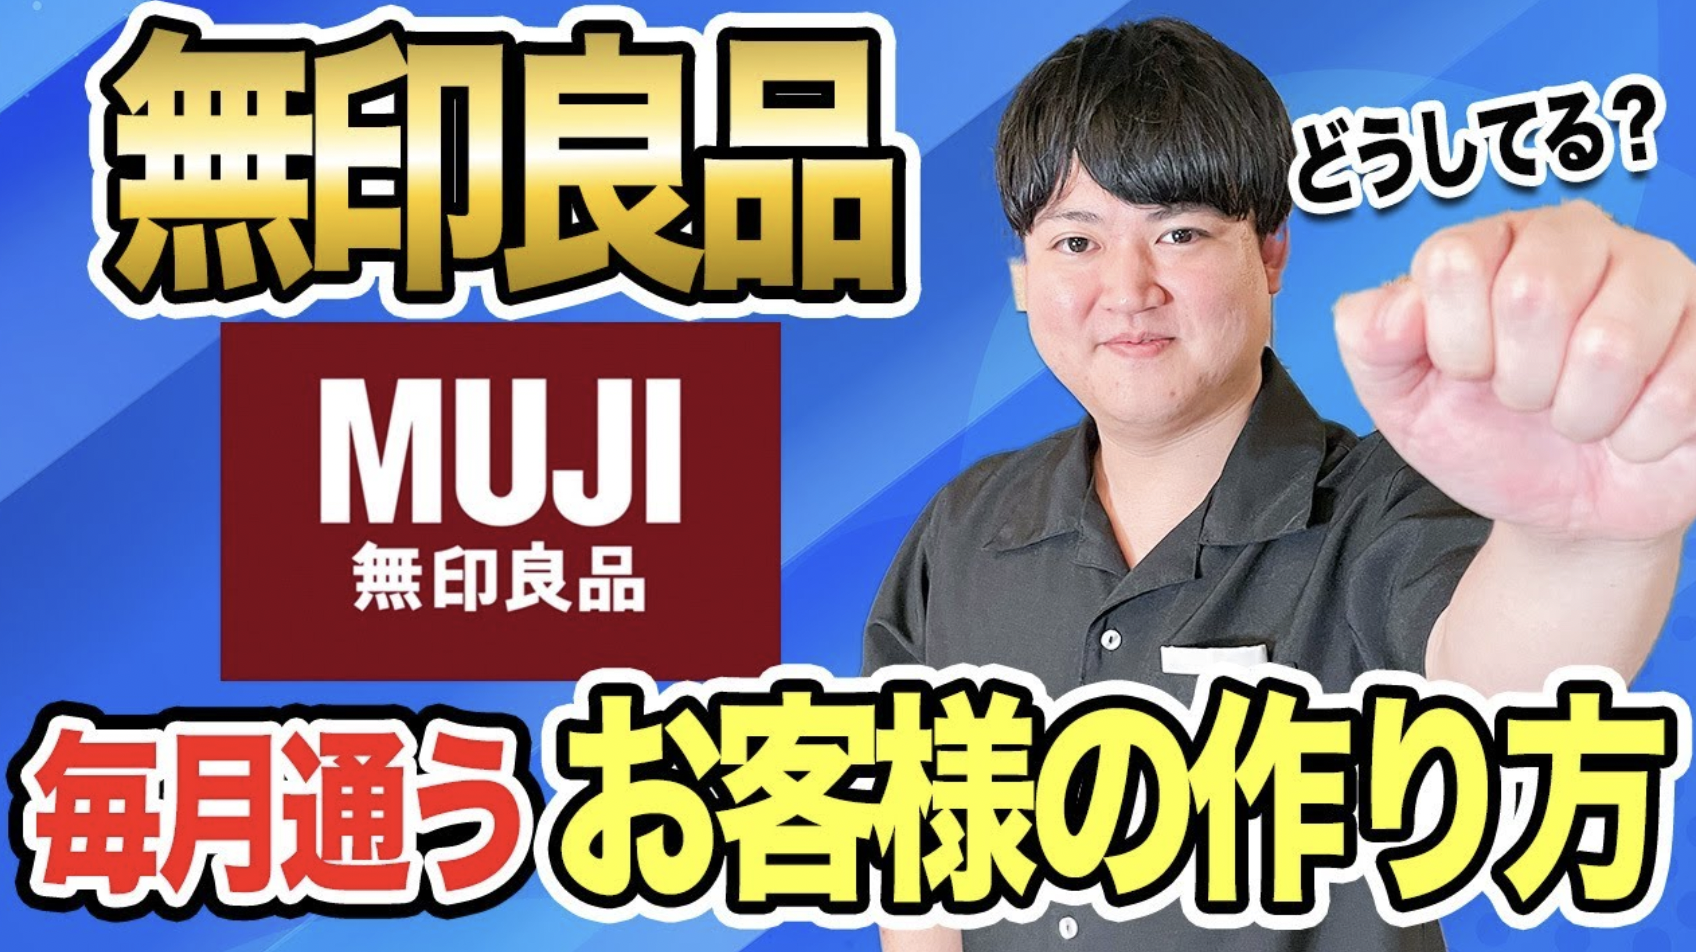 muji様 リクエスト 2点 まとめ商品+apple-en.jp